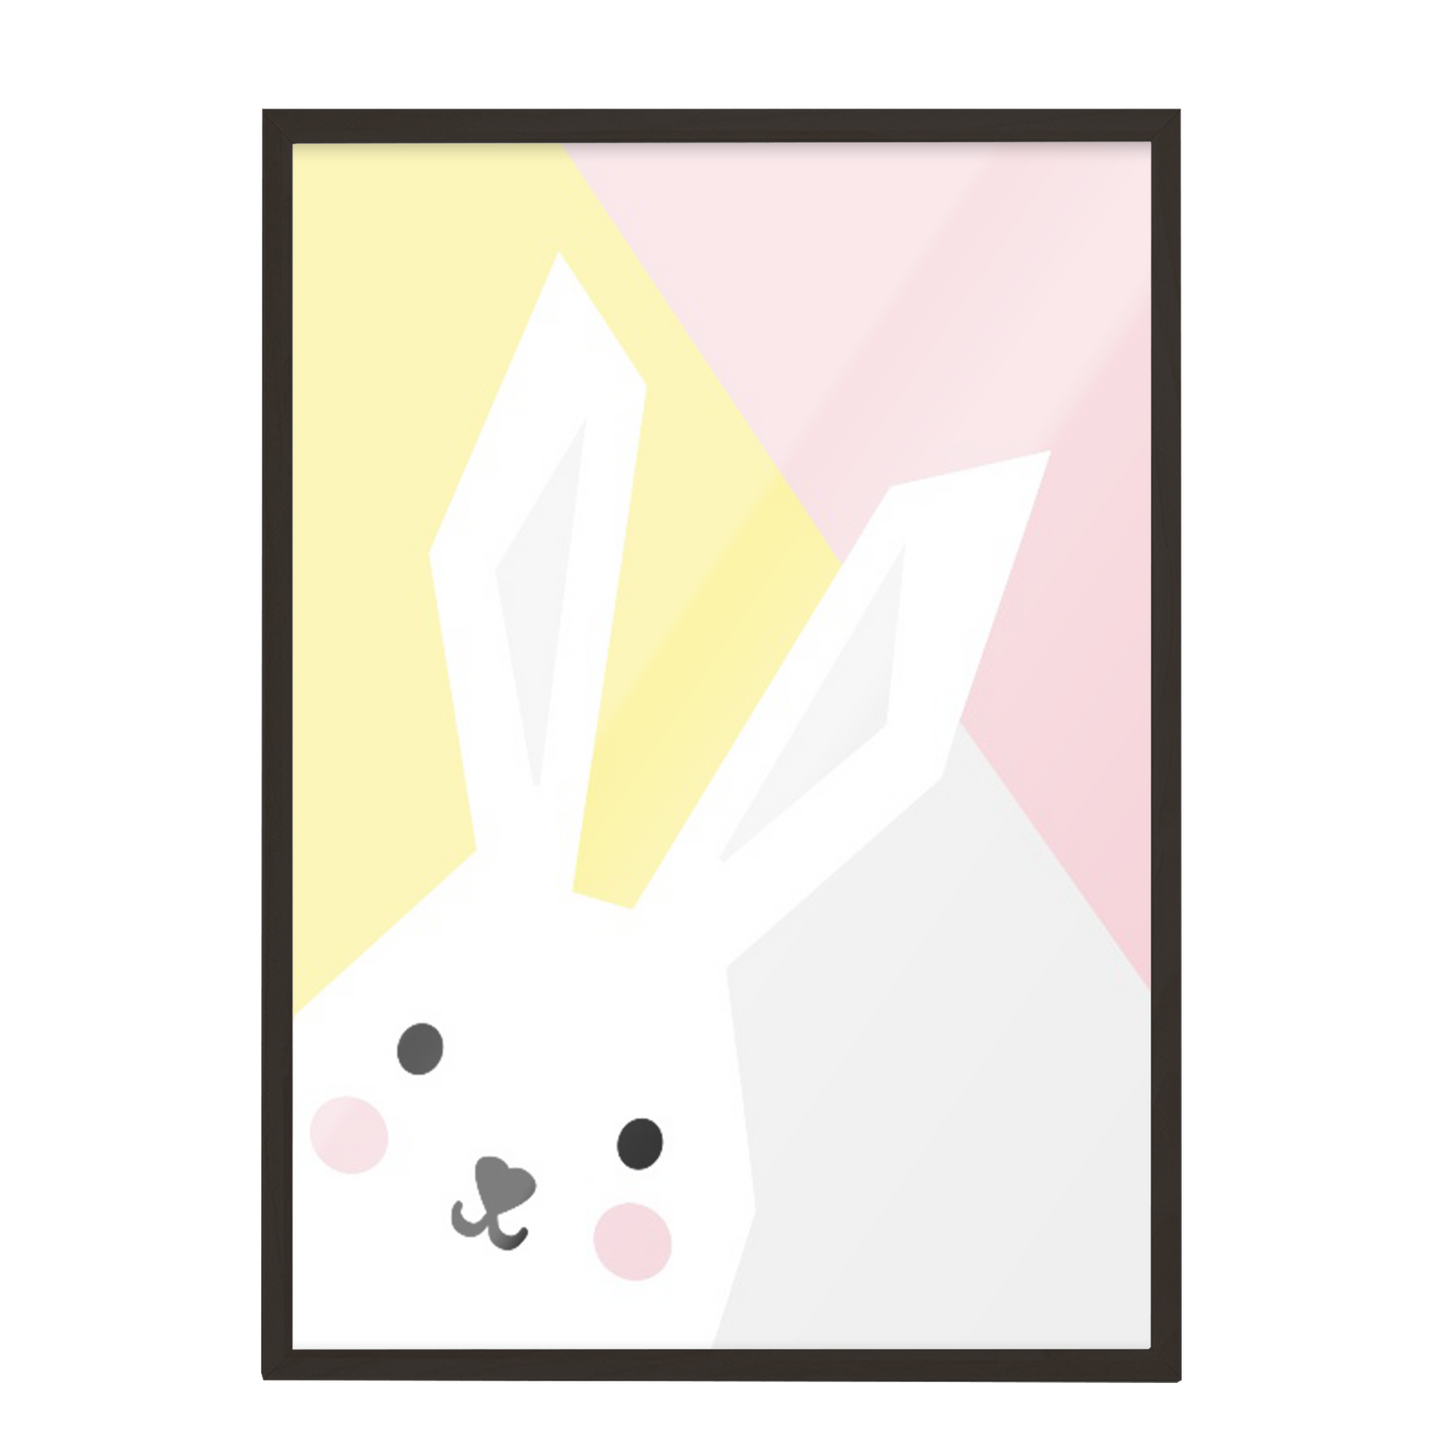 Ilustración conejo geométrico, Colores decoración 207